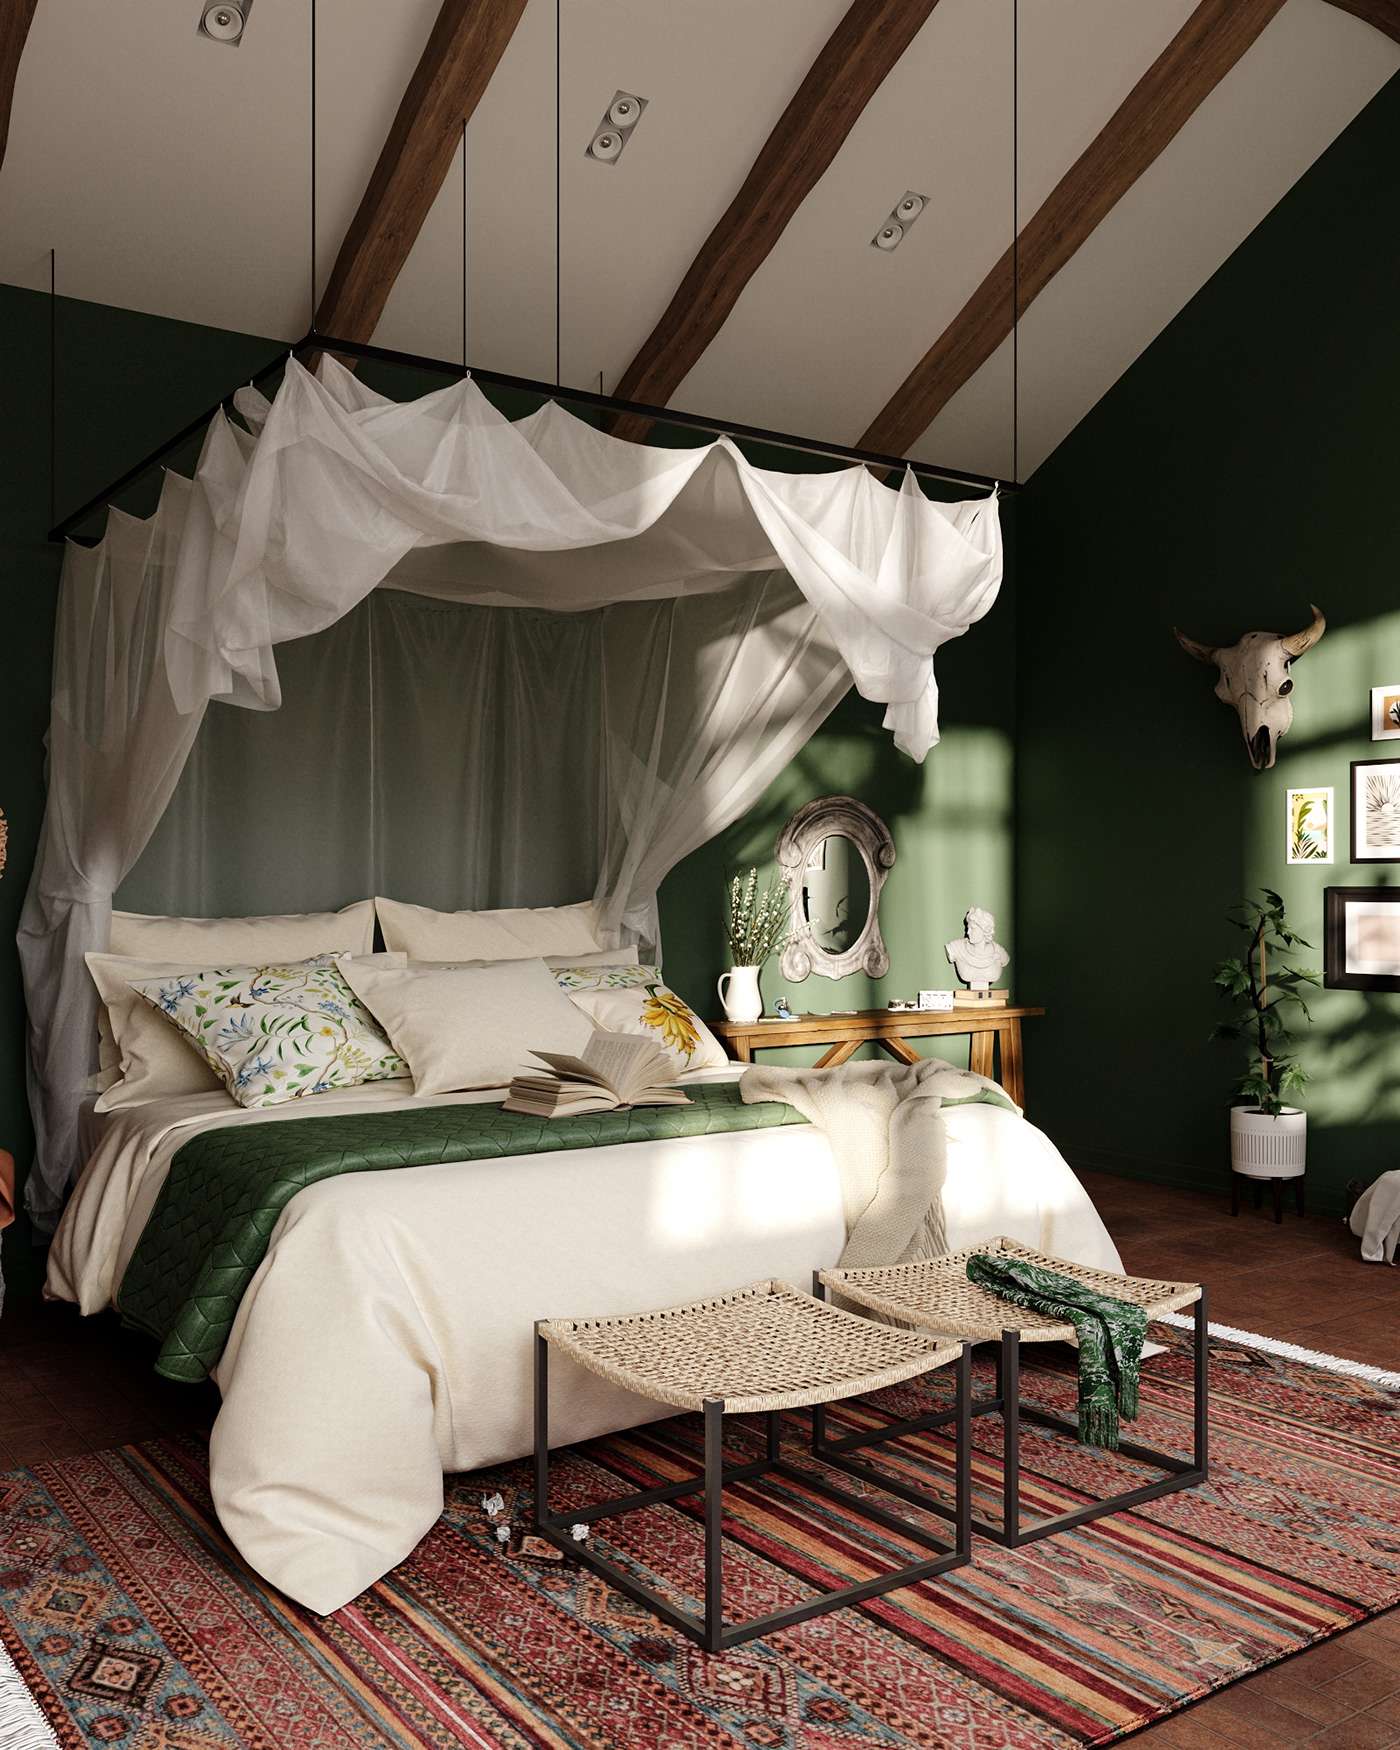 Phòng ngủ thiết kế theo phong thủy với gam màu xanh lá, phản ánh sự ấm áp và hài hòa cho gia chủ mệnh Hỏa.